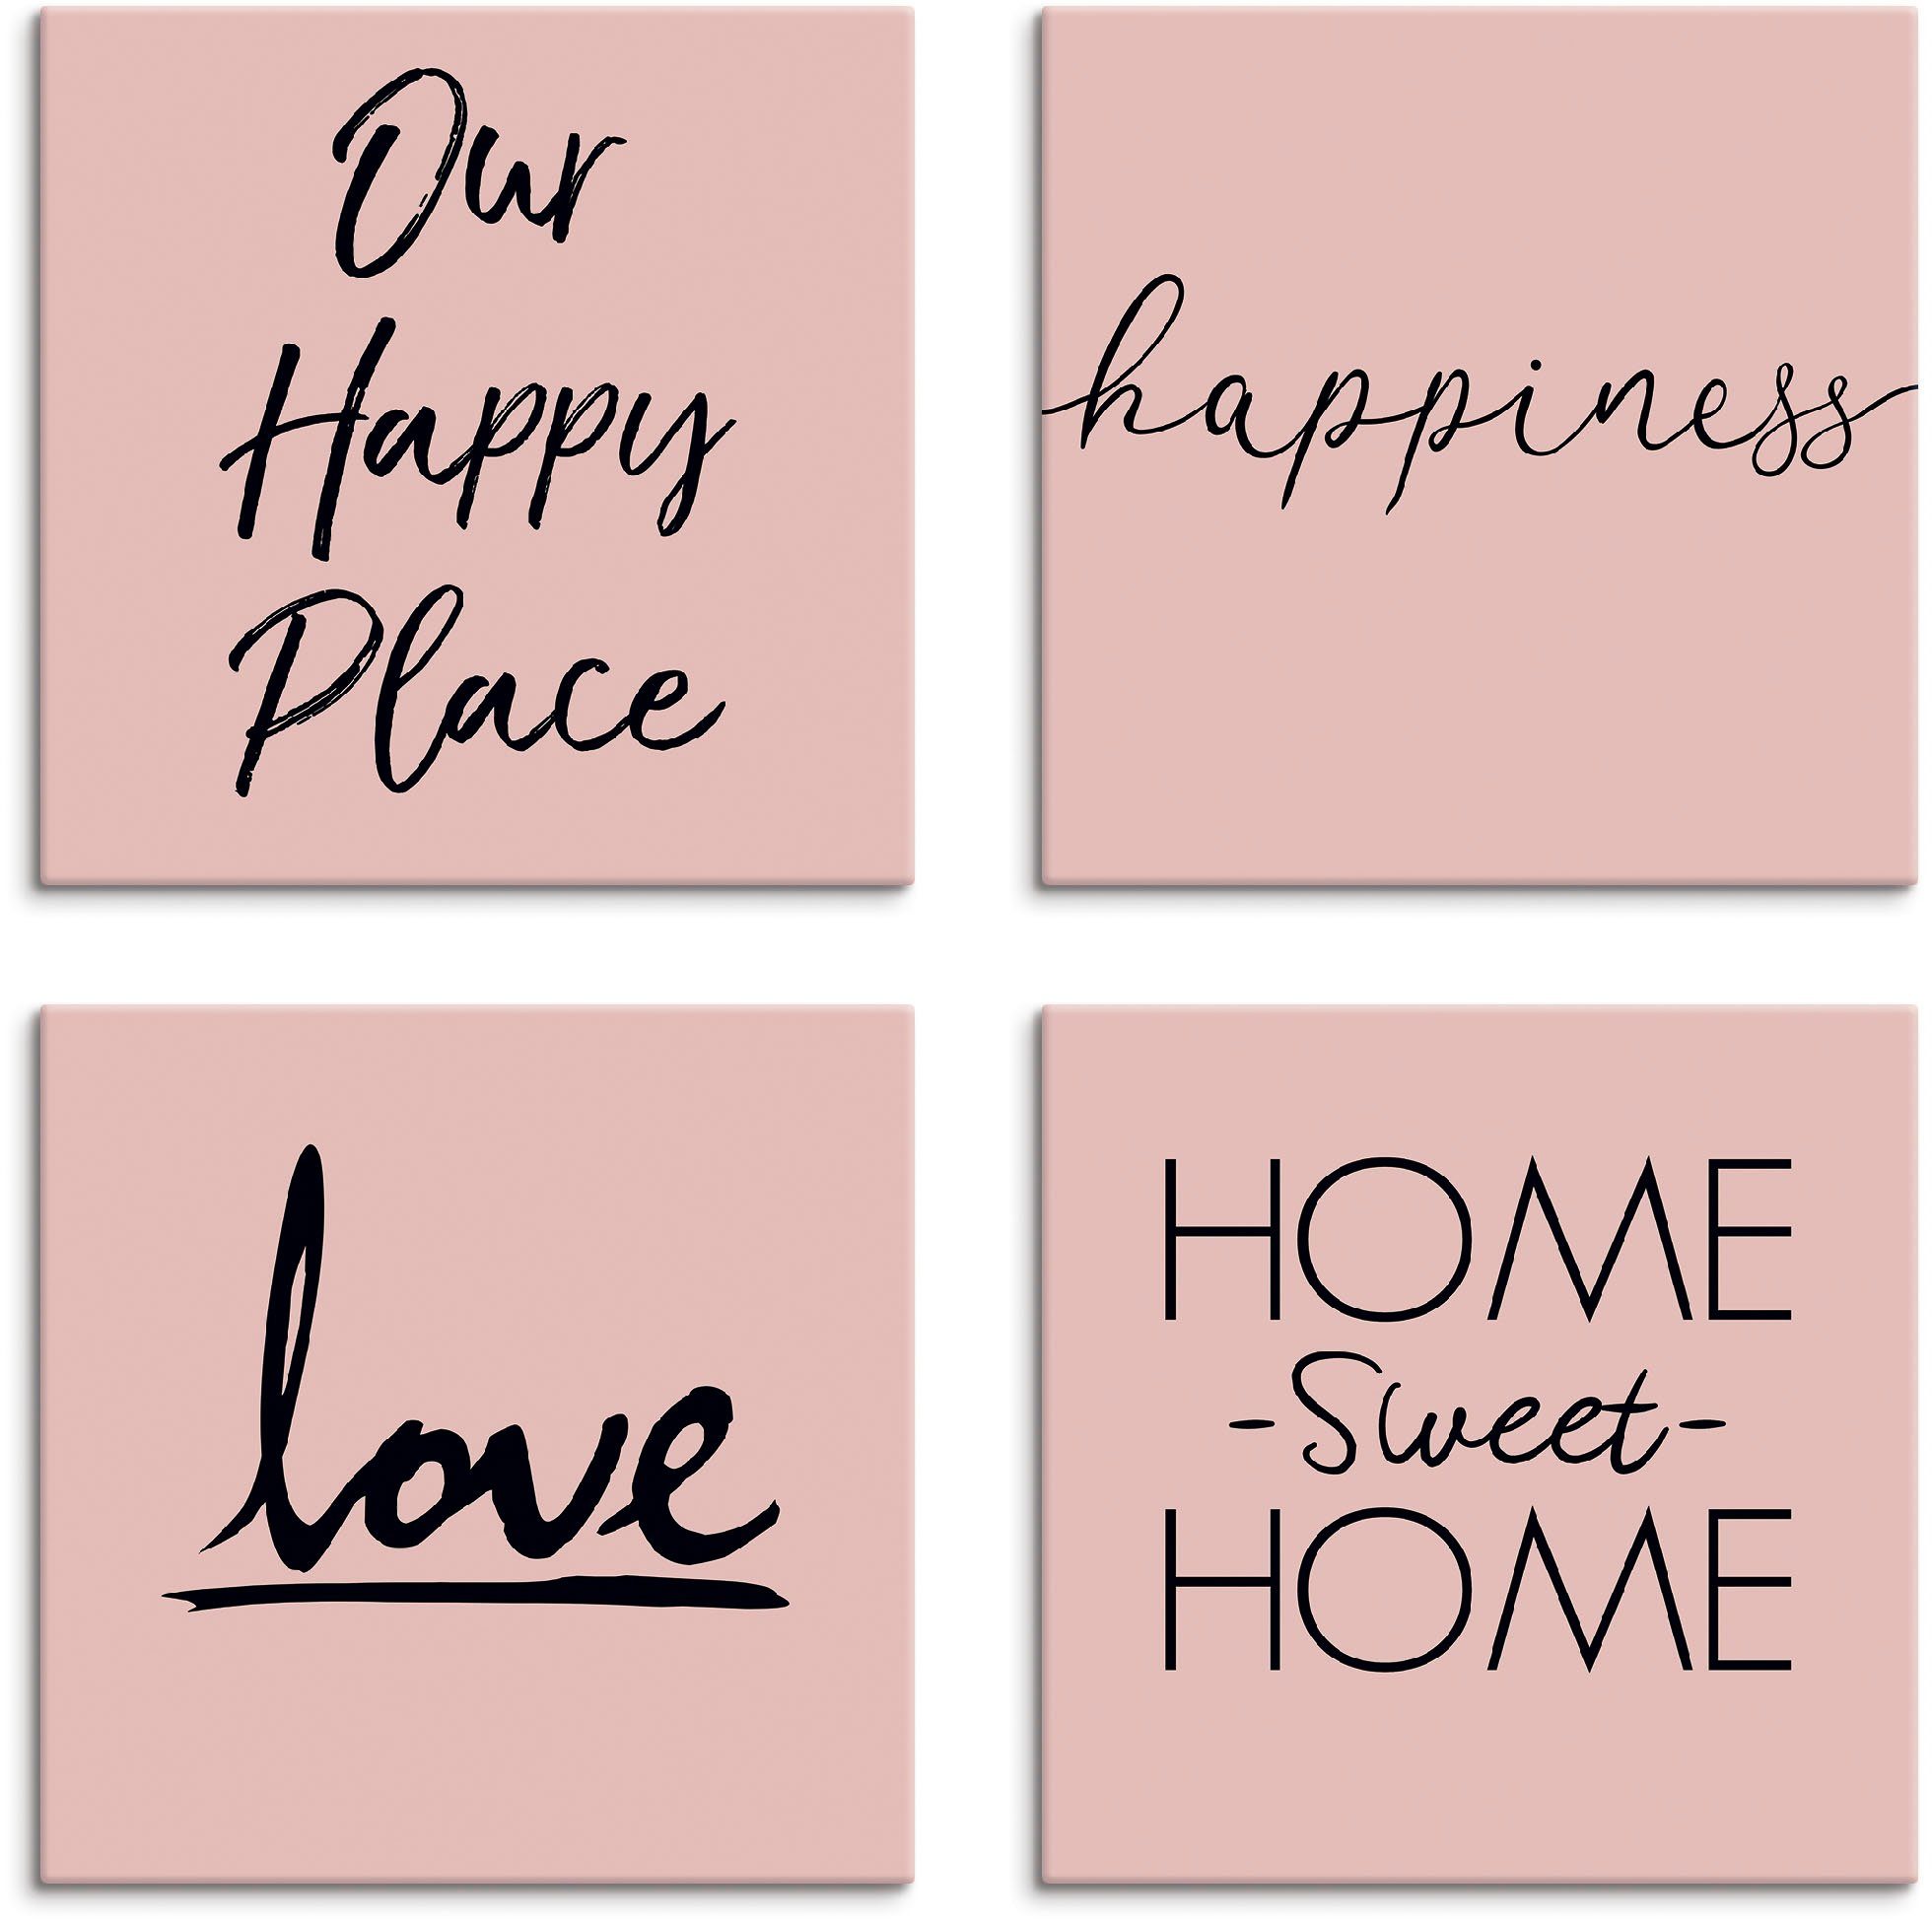 Artland Artprint op linnen Plaats geluk liefde Home sweet Home (4 stuks)